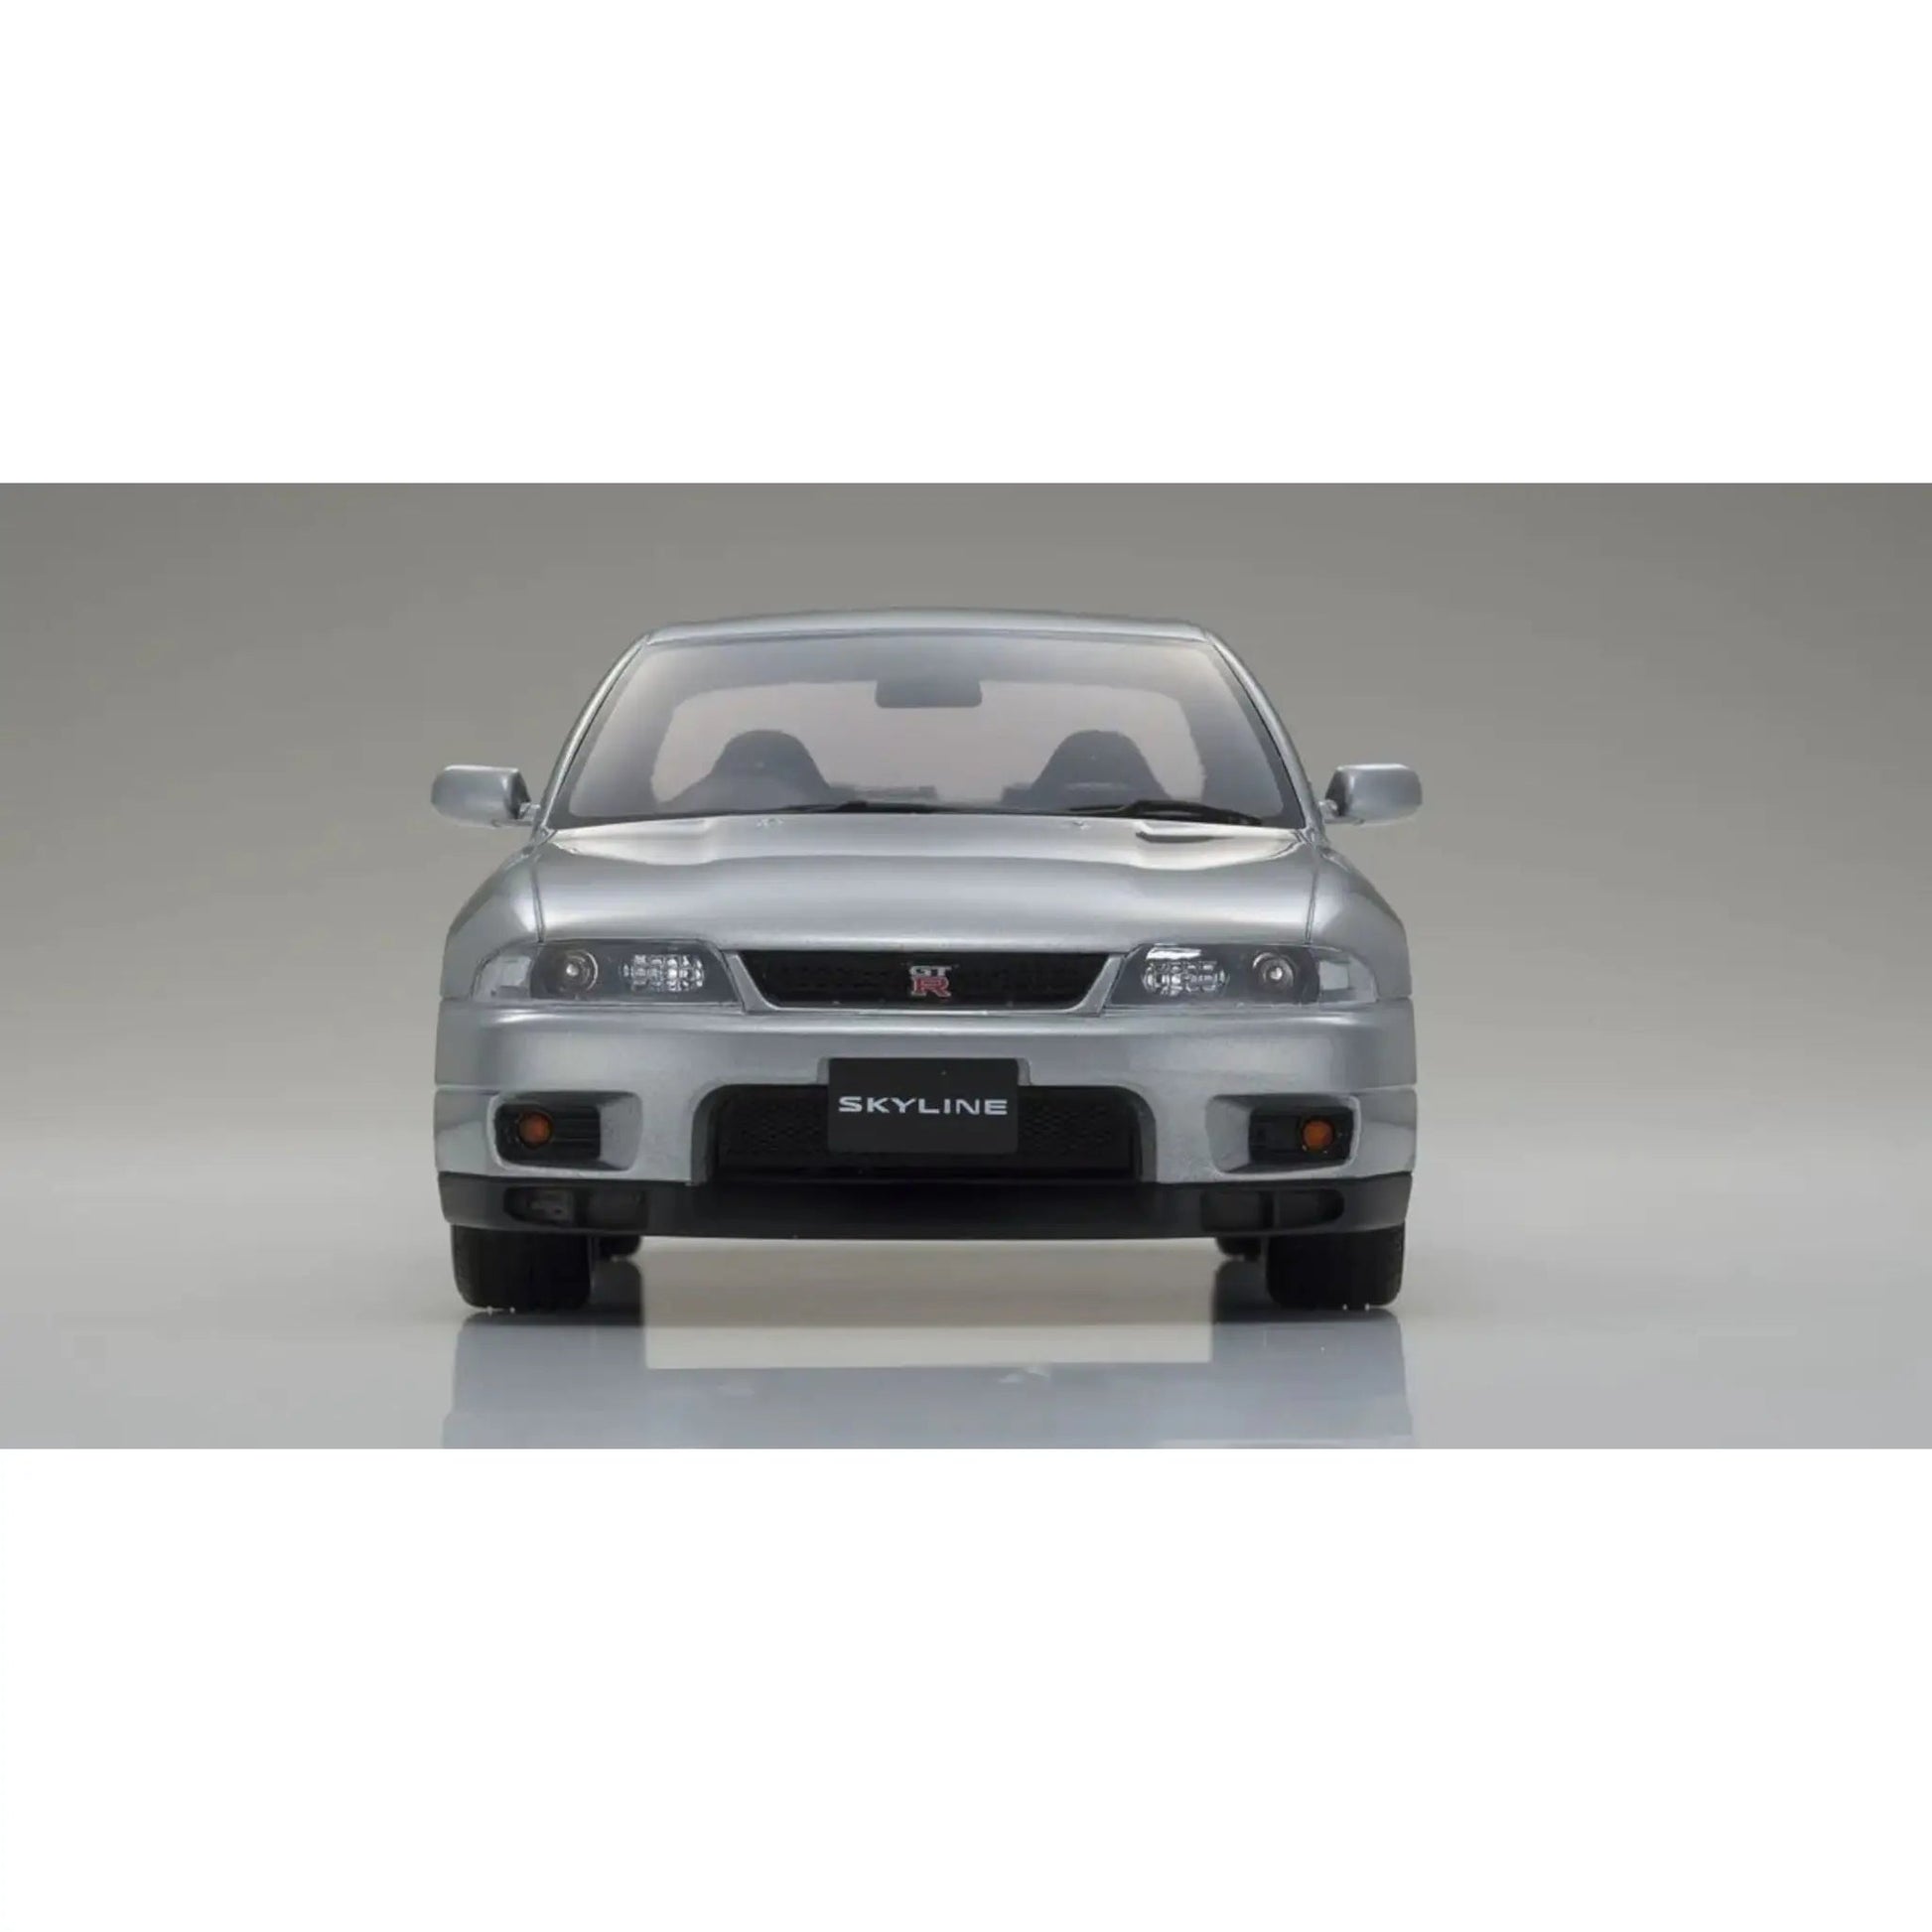 Nissan Skyline GT-R Autech Version Kyosho 1/18 - kyoKSR18041s